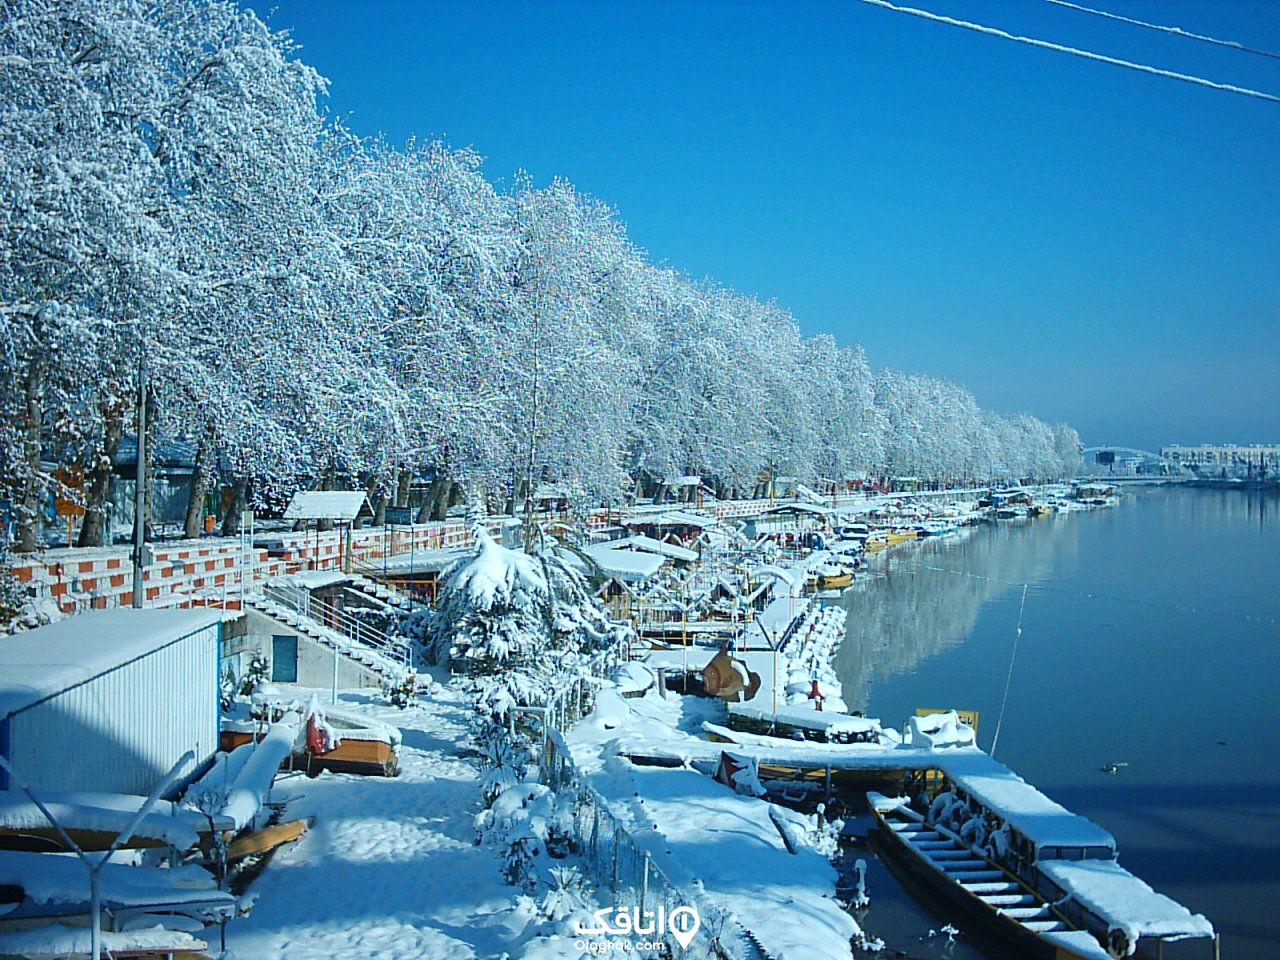 در کنار رودخانه در بابلسر پارک ساحلی قرار دارد که قایق های تفریحی در کنار آن پارک شده اند و روی همه ی آنها پر از برف است